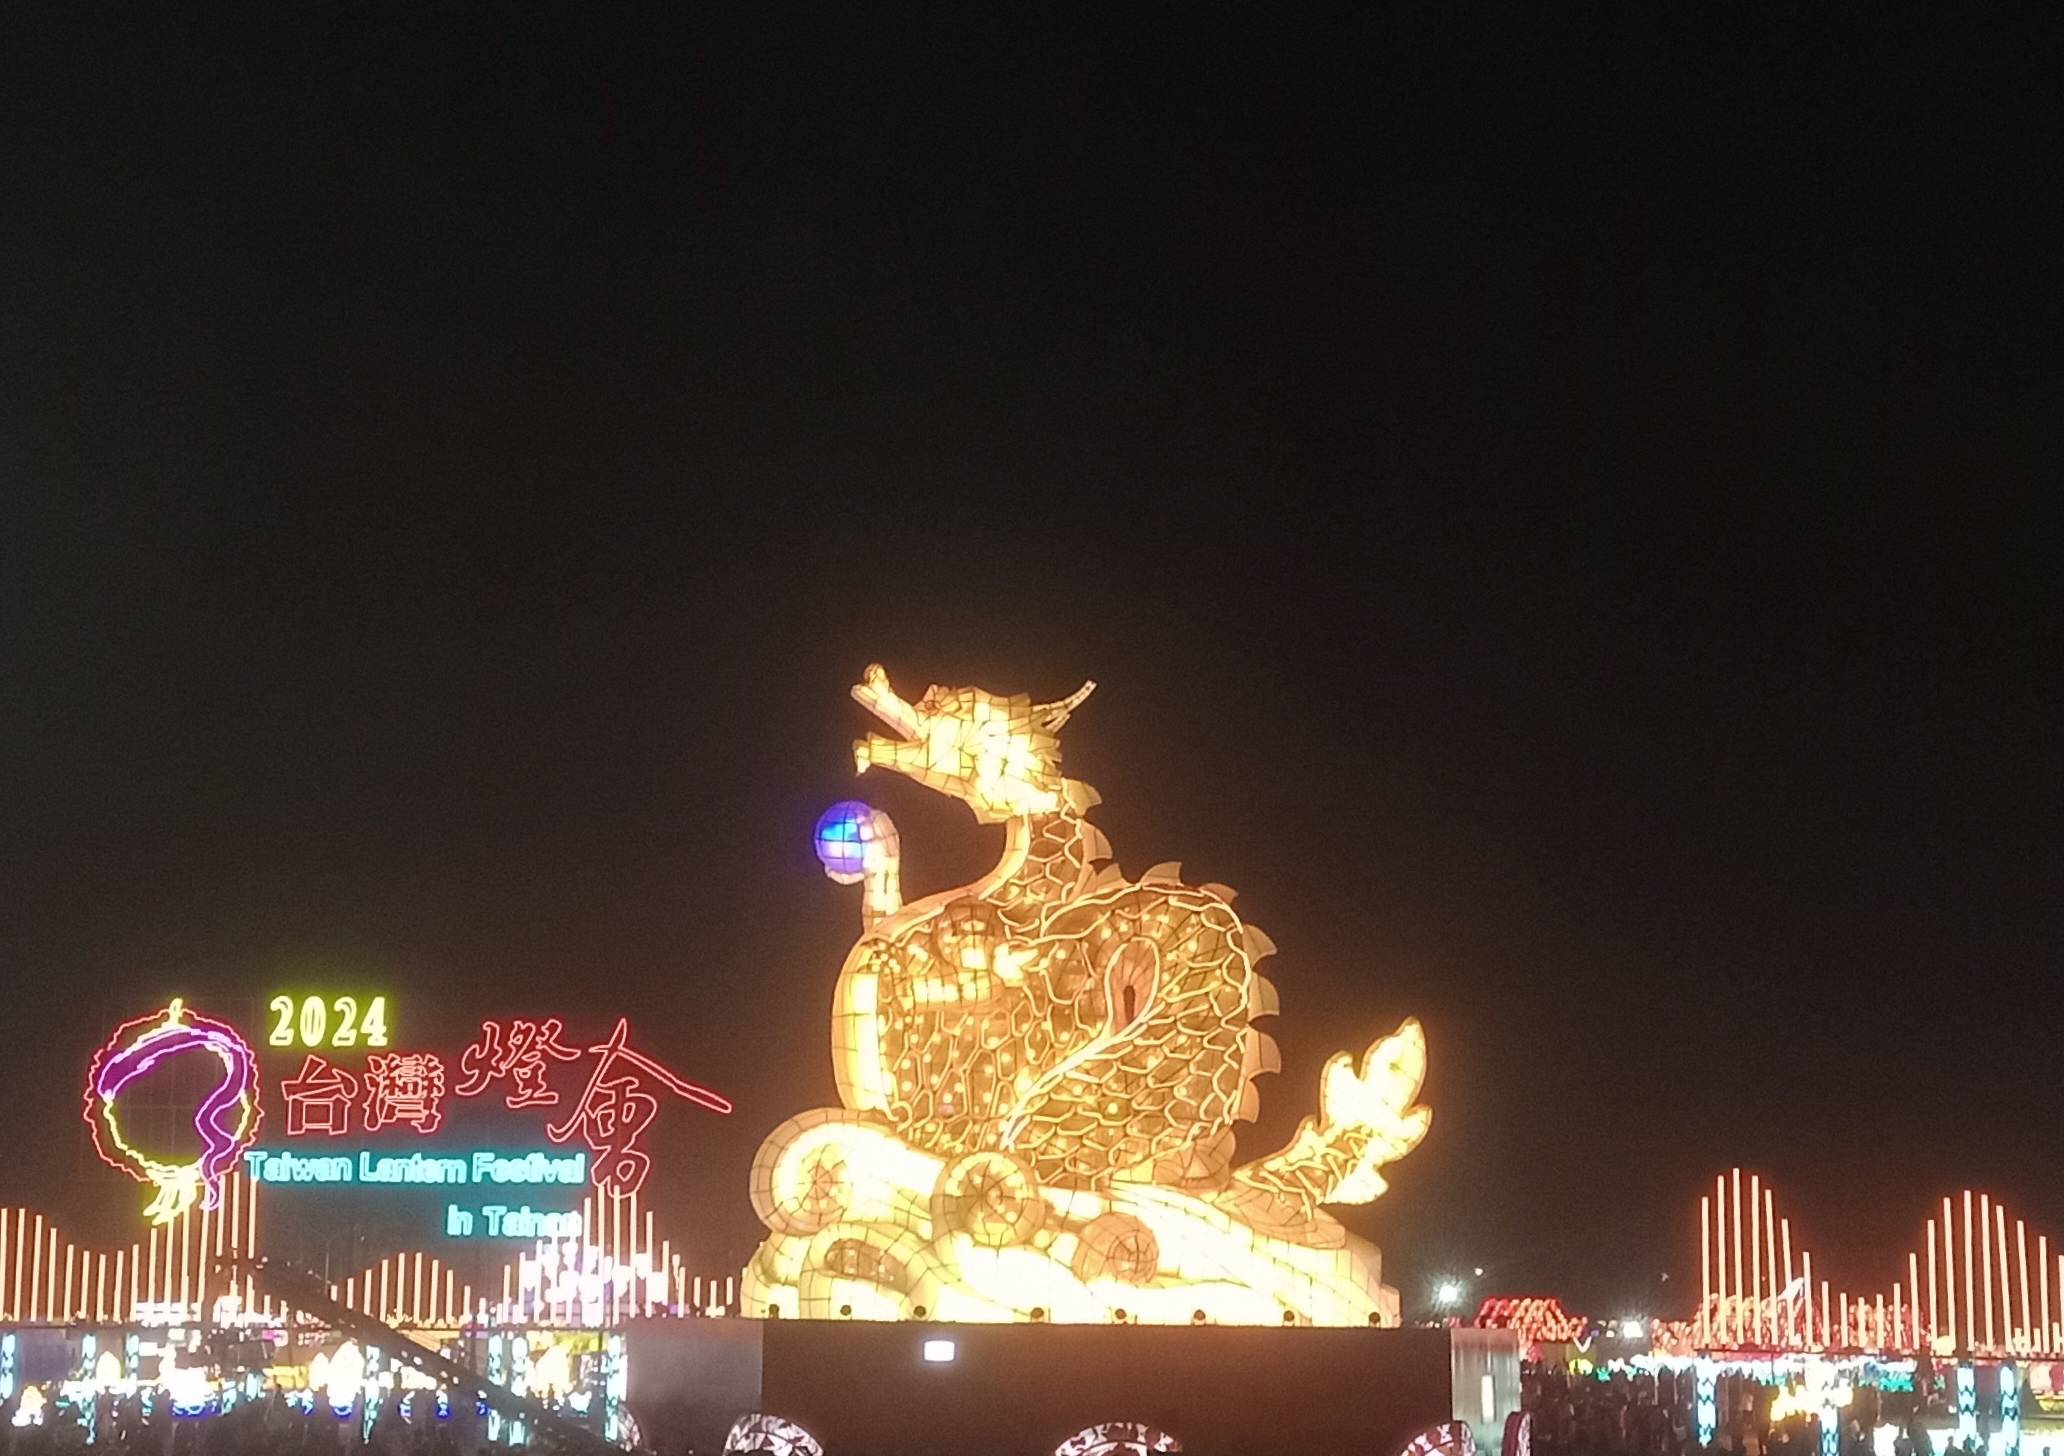 Taiwan Lantern Festival in Tainan 2024